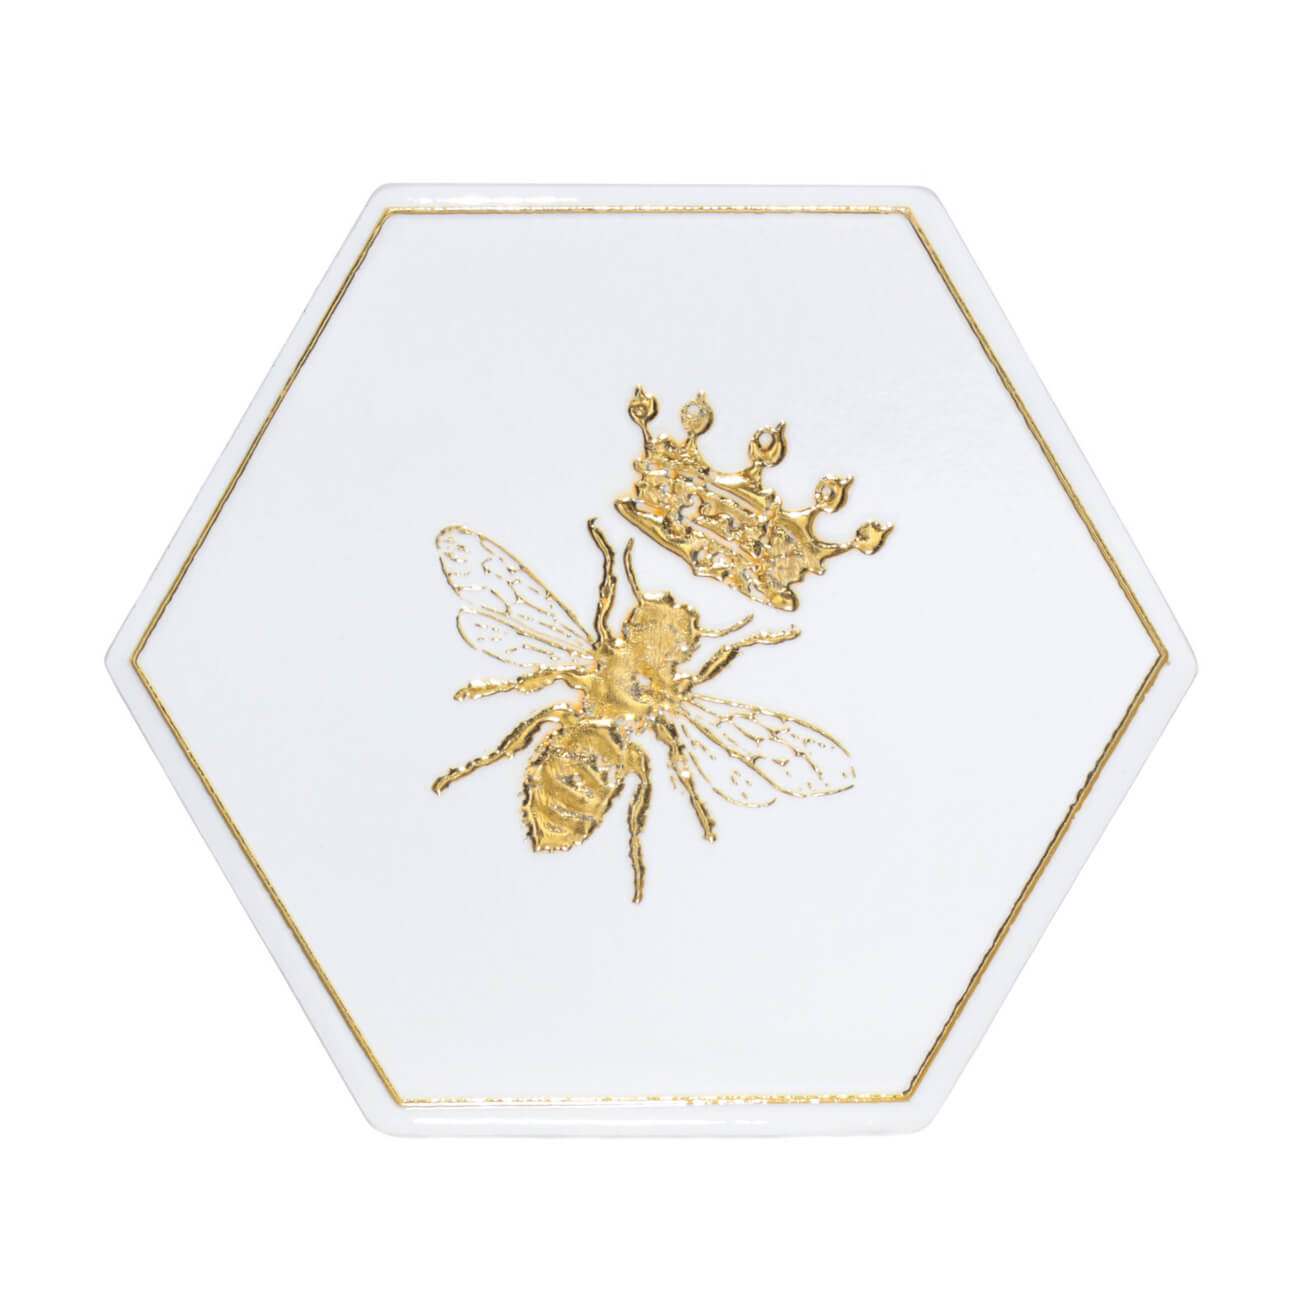 Подставка под кружку, 11 см, керамика/пробка, шестиугольная, белая, Королевская пчела, Honey изображение № 1